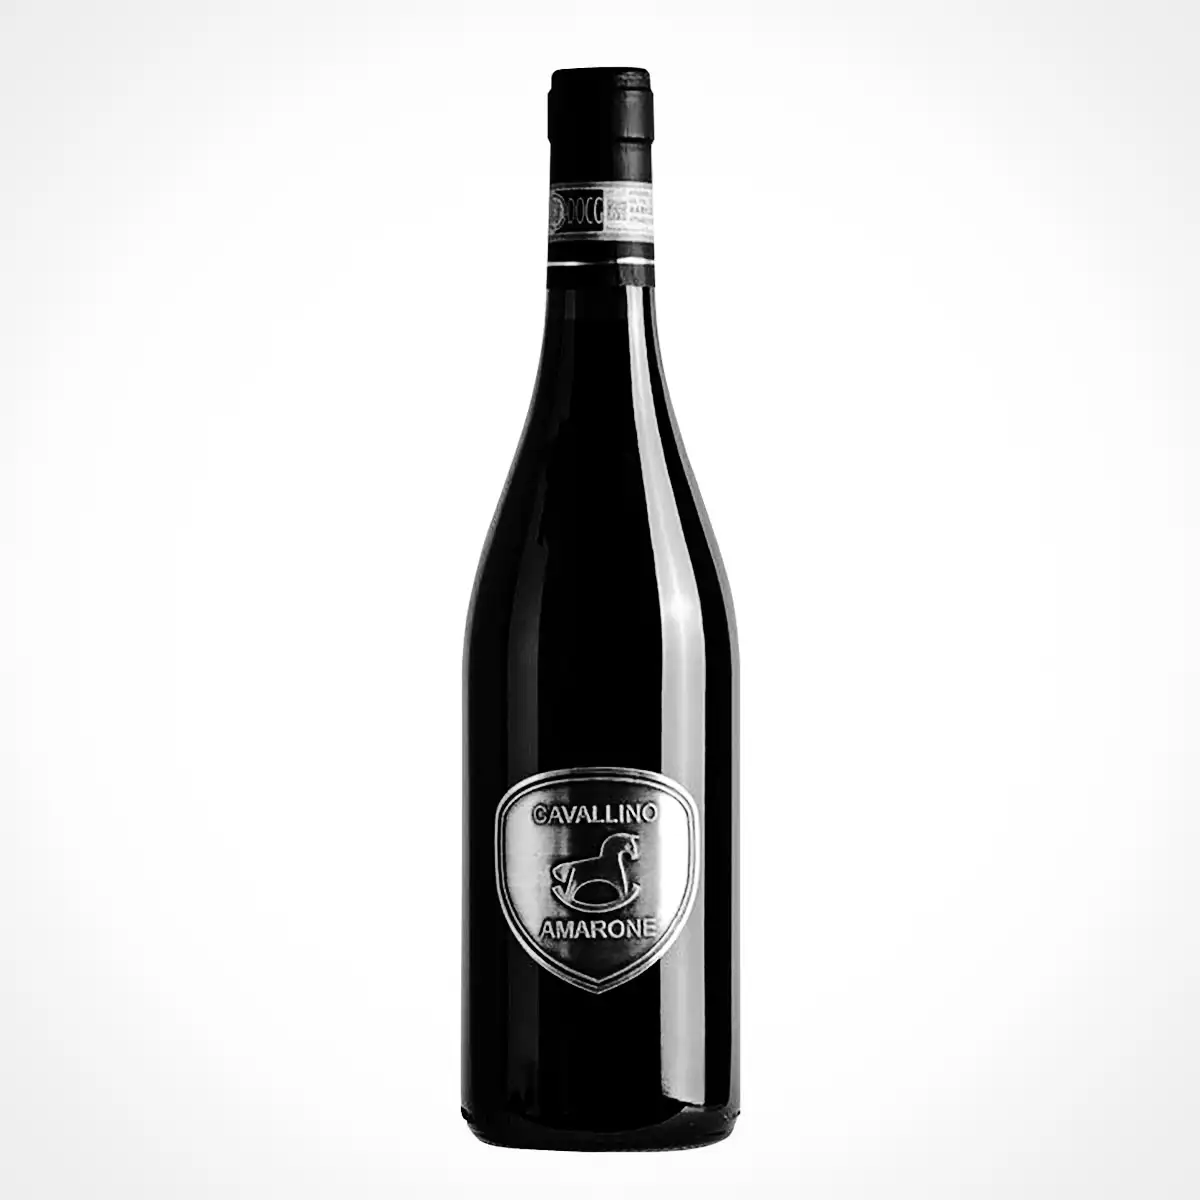 ไวน์แดงชั้นเลิศของอิตาลีผลิตในจังหวัดเวโรนาไวน์ที่สมบูรณ์แบบของรสชาติที่ดีและความสมดุลที่ยอดเยี่ยม